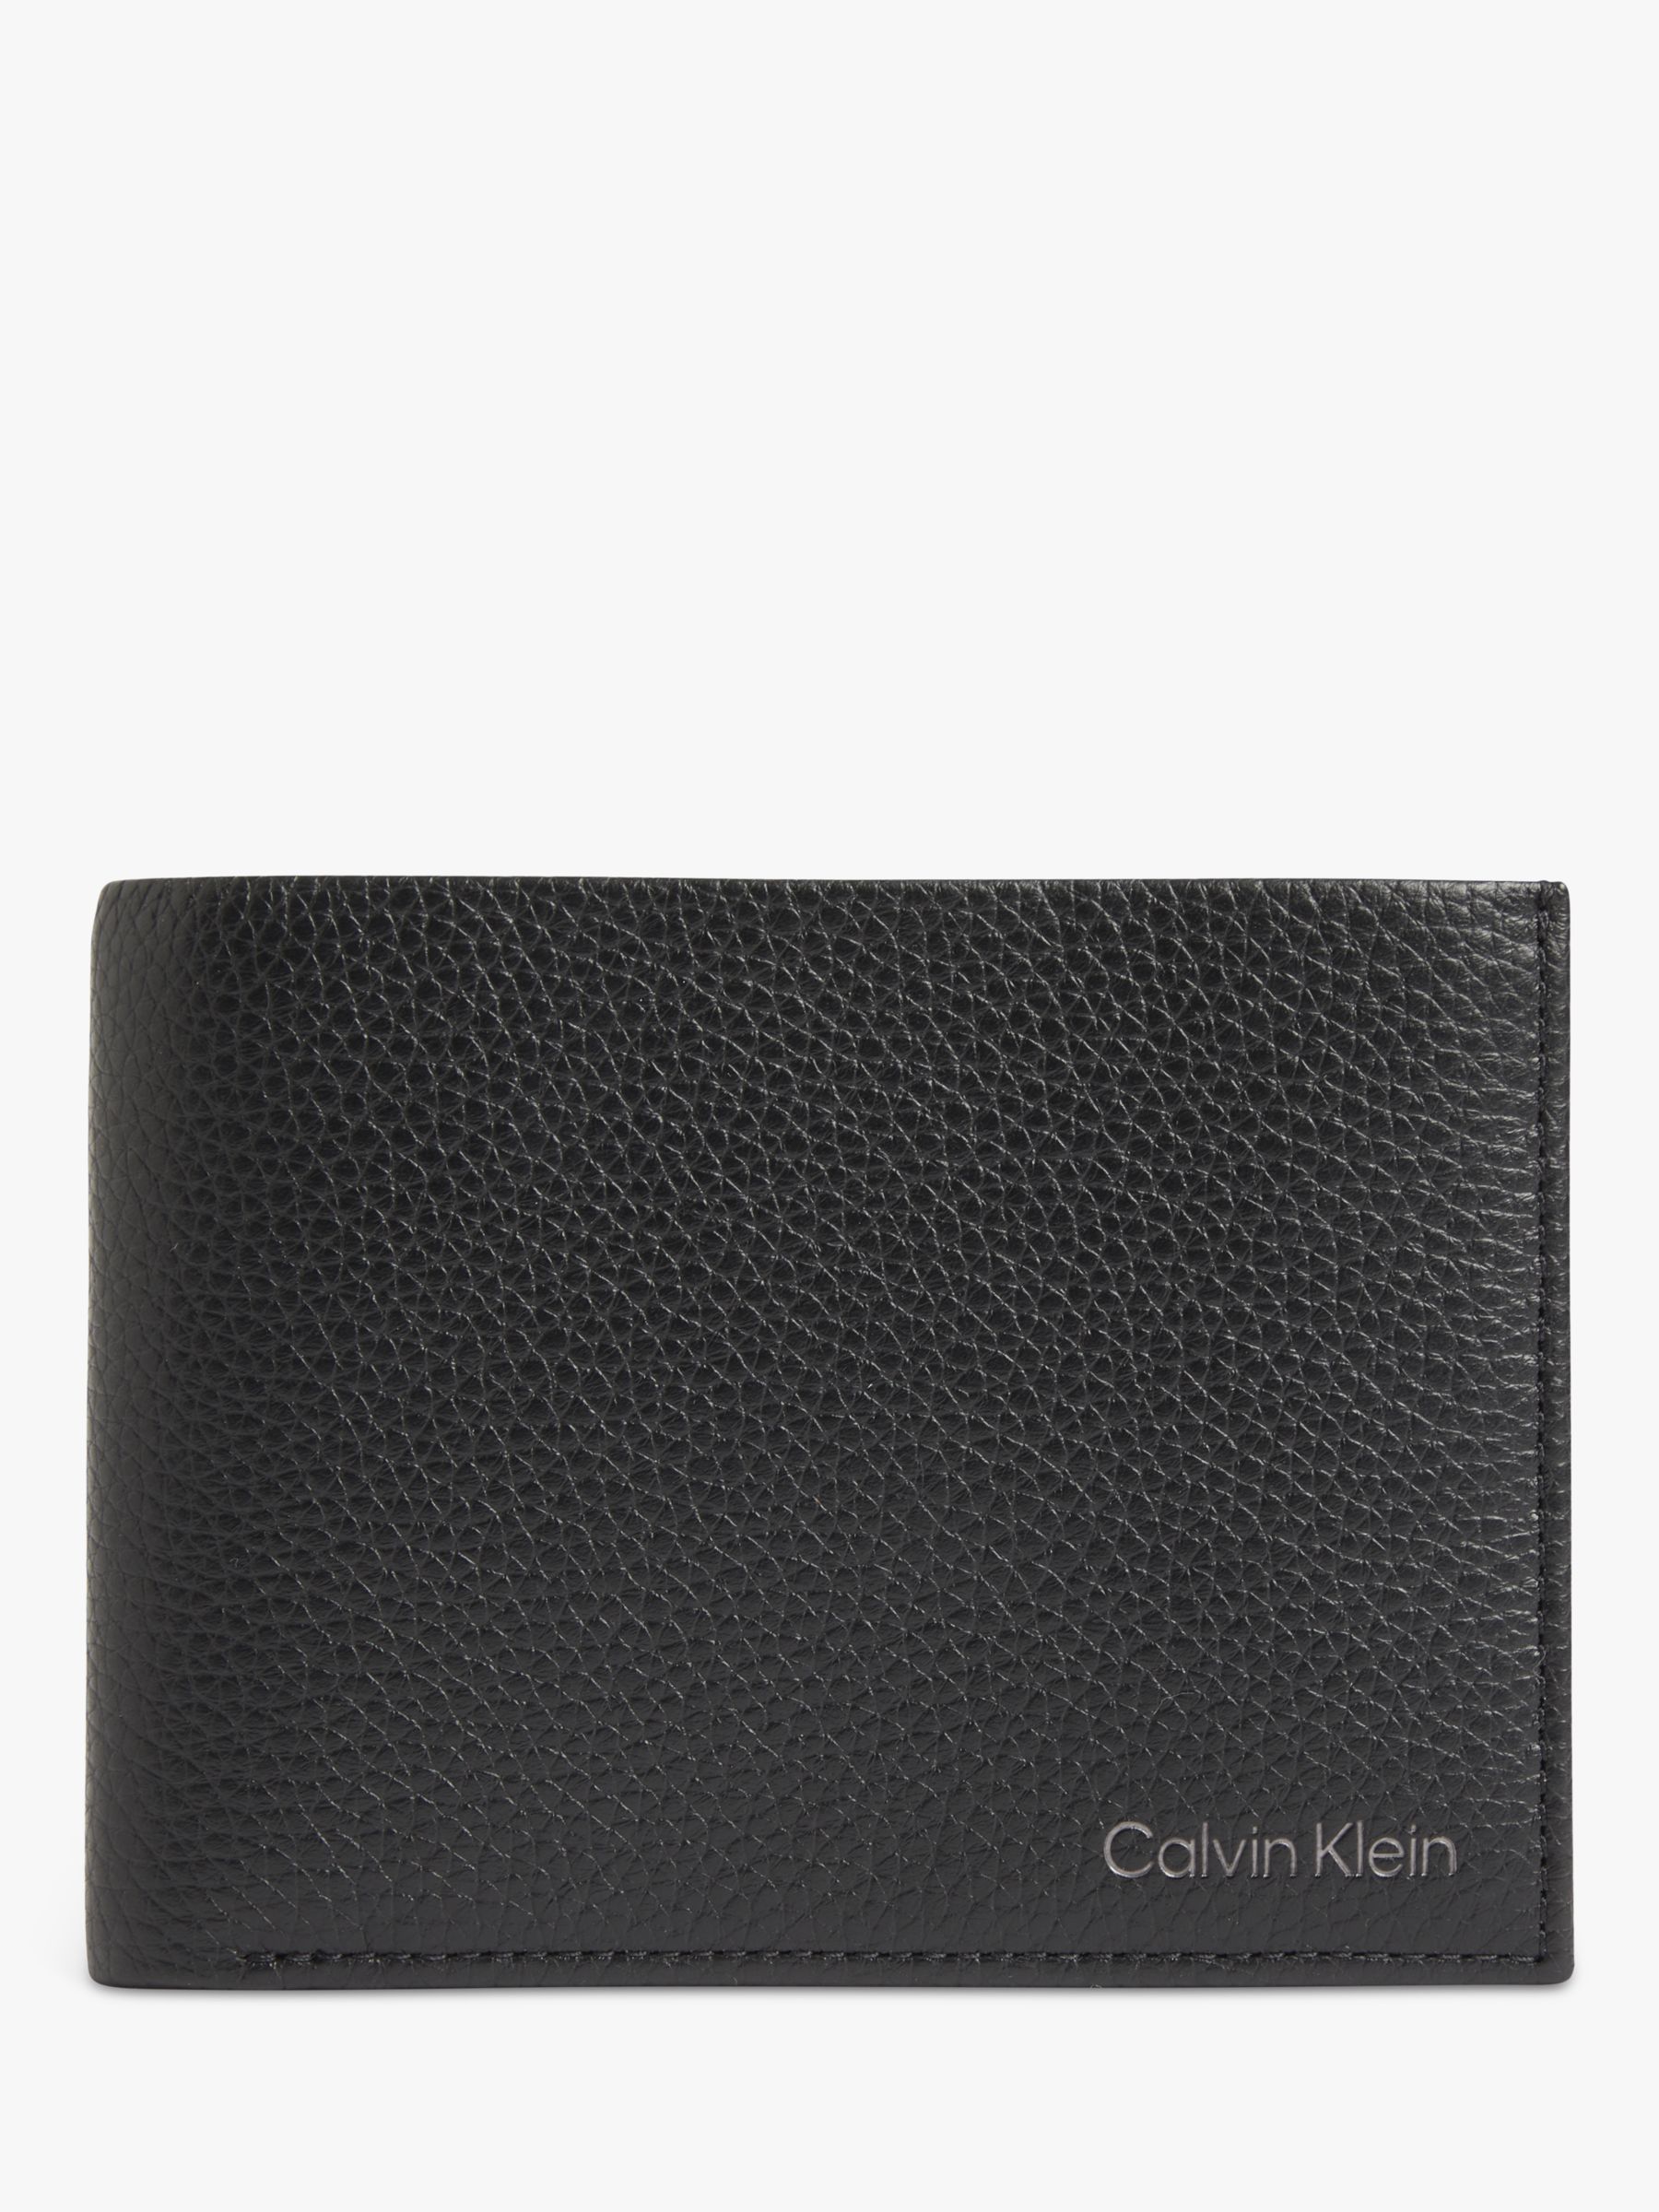 Calvin Klein Warmth Bi-Fold Leather Wallet, Black at John Lewis & Partners